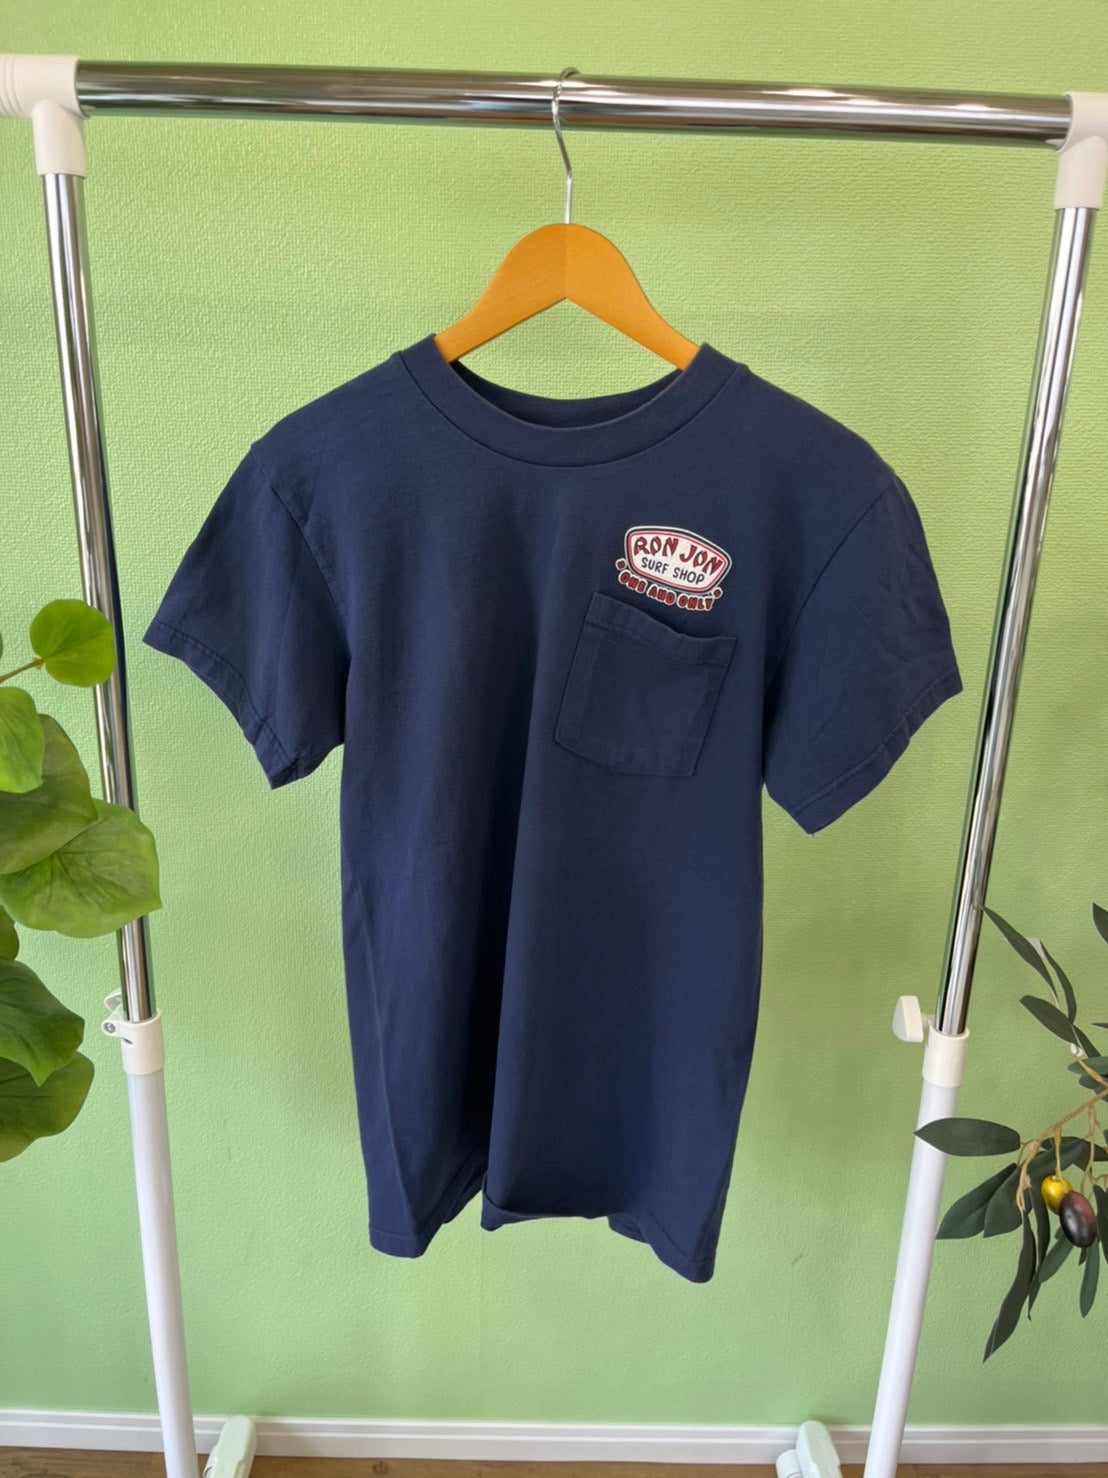 【RON JON】90's RonJon Surf Shop simple logo Vintage Pocket T-Shirt  （men's M)